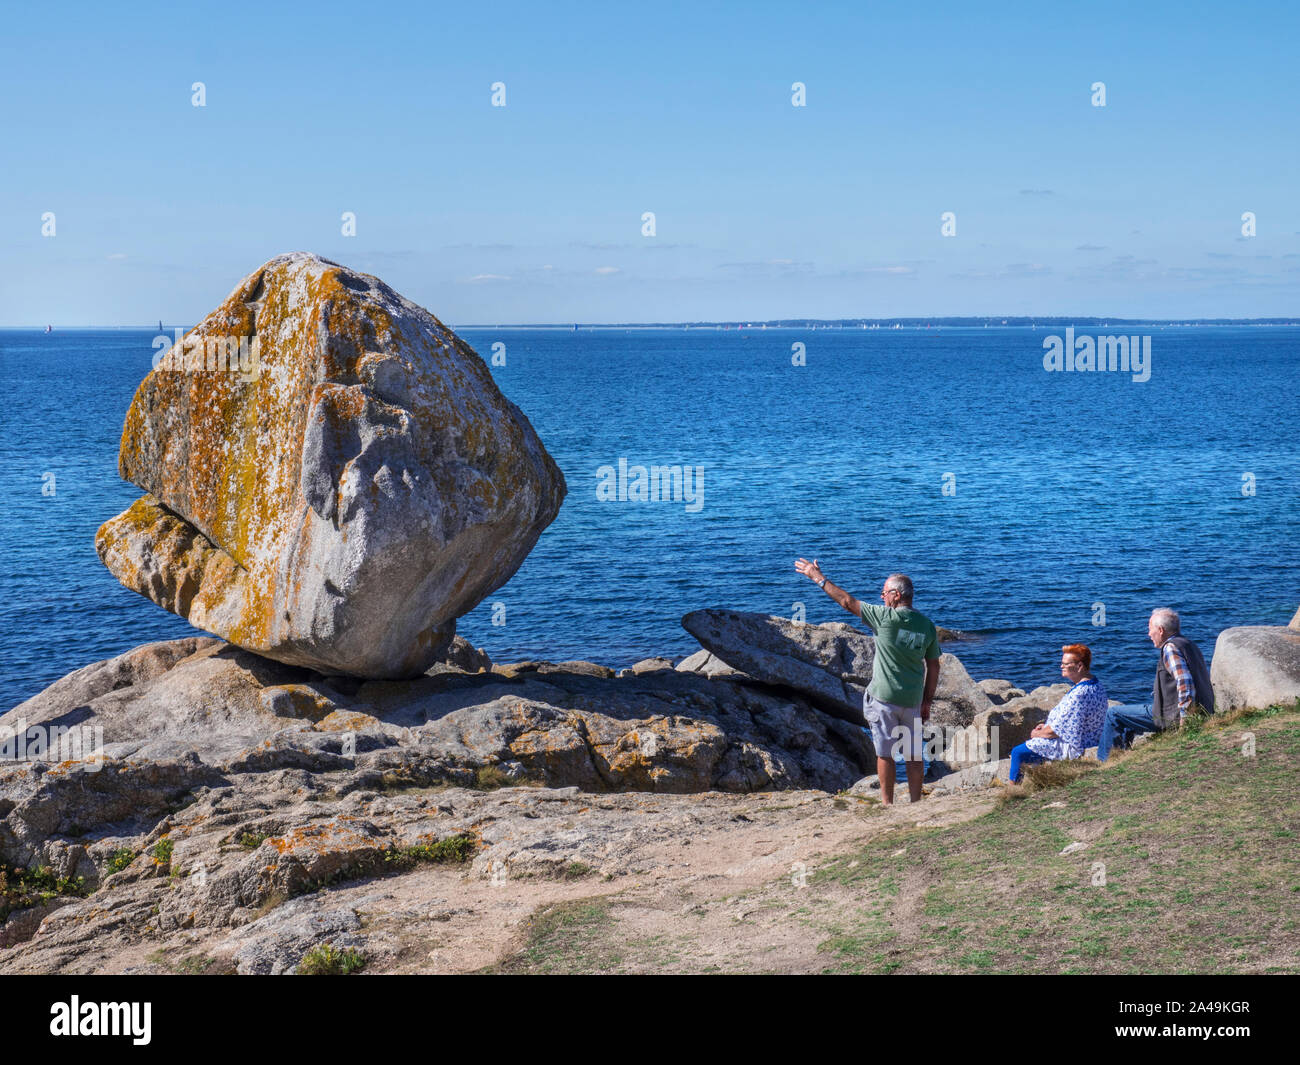 Trevignon Felsen Pointe de Trevignon Besucher Geste gegenüber auffälligen Rock balancing Ausbildung an der Küste Finistere Bretagne Frankreich Stockfoto